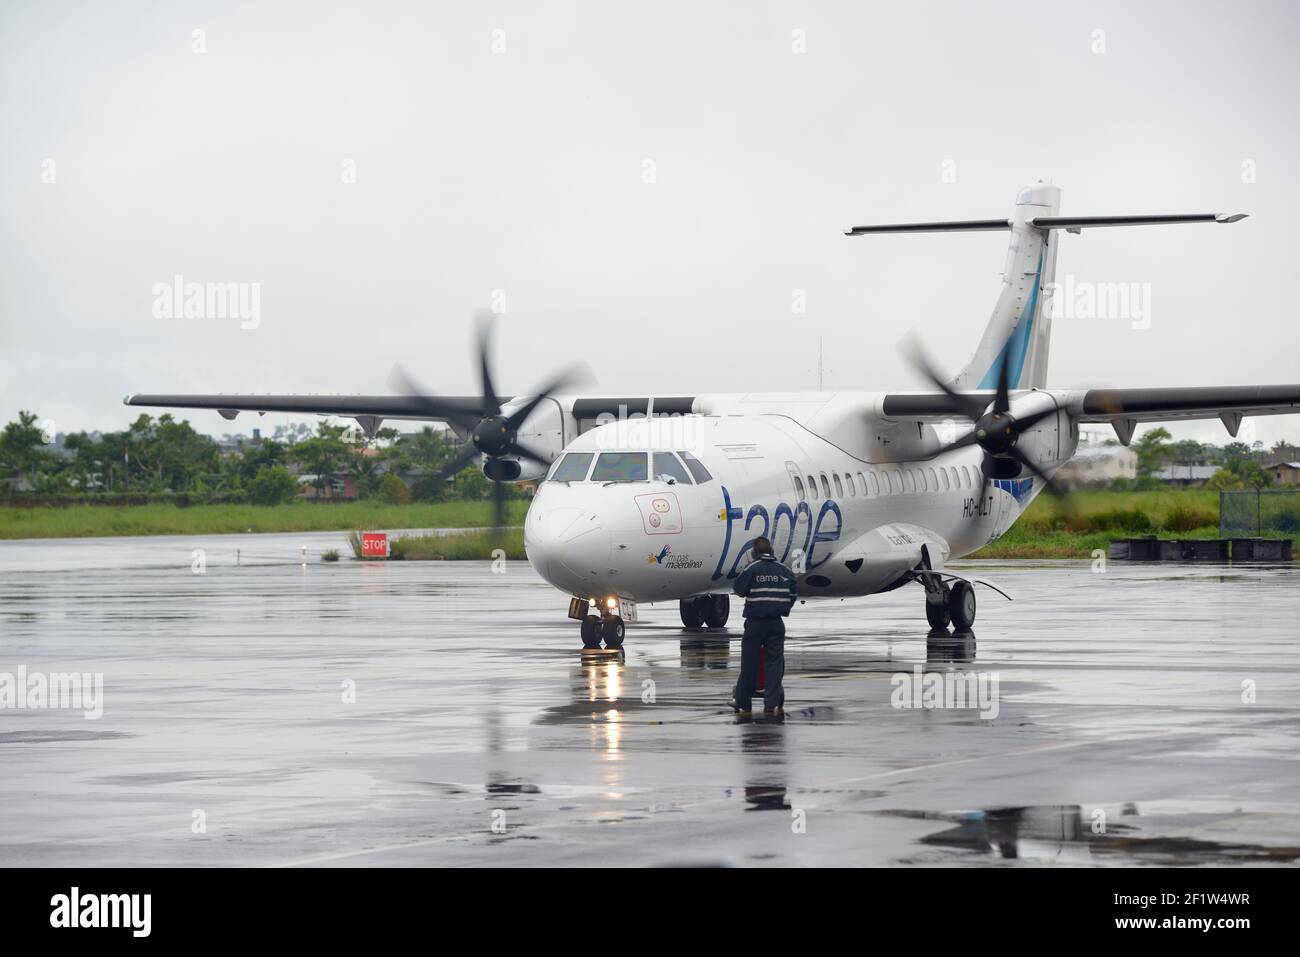 Tame airplane arriving at Francisco de Orellana Airport, Coca, Orellana, Ecuador Stock Photo